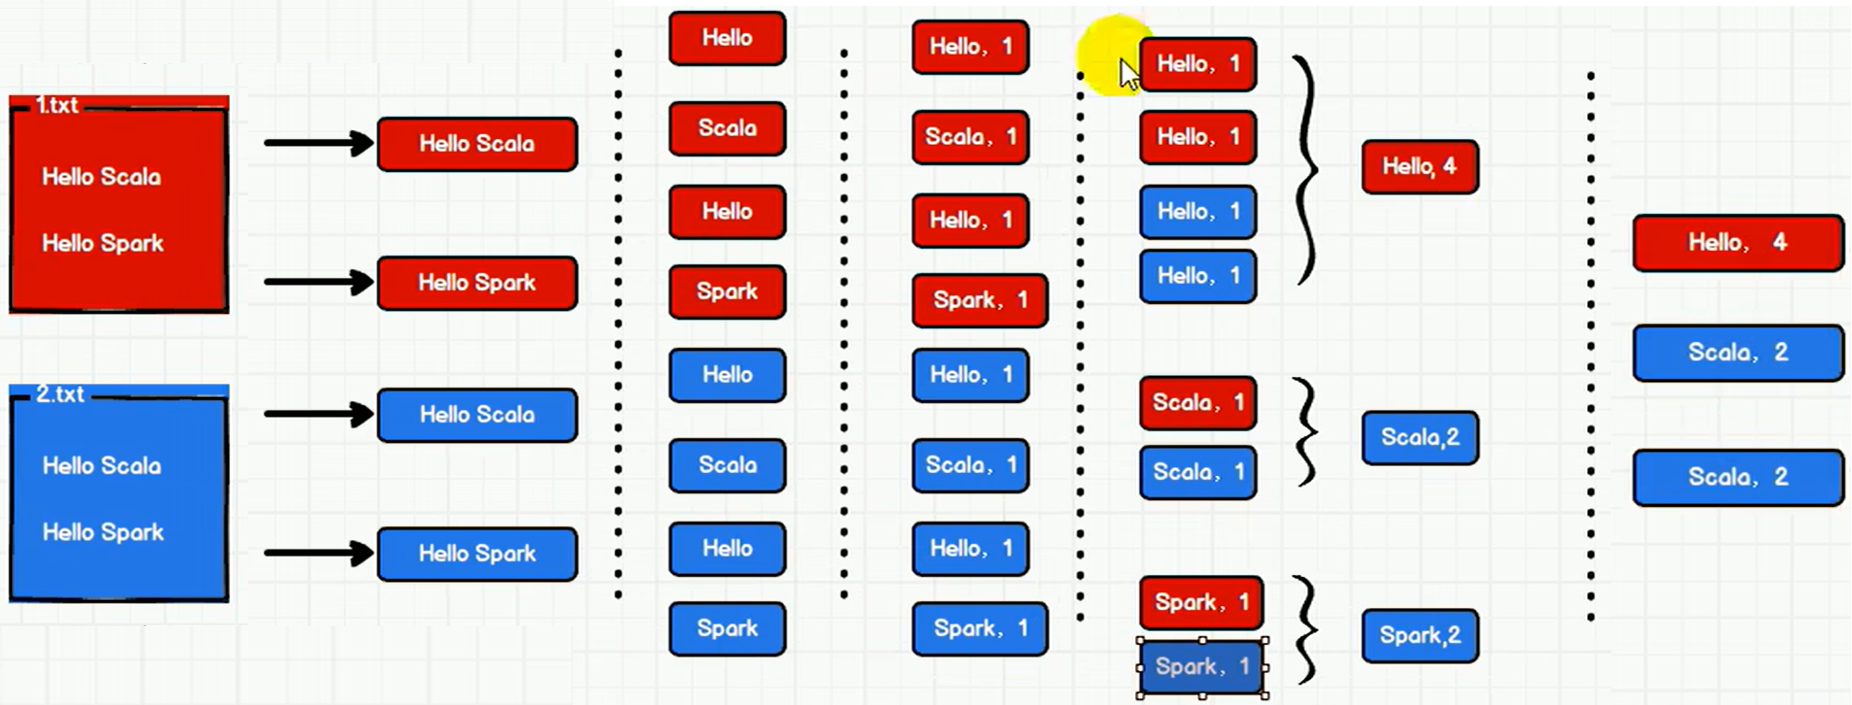 尚硅谷大数据技术Spark教程-笔记01【Spark(概述、快速上手、运行环境、运行架构)】